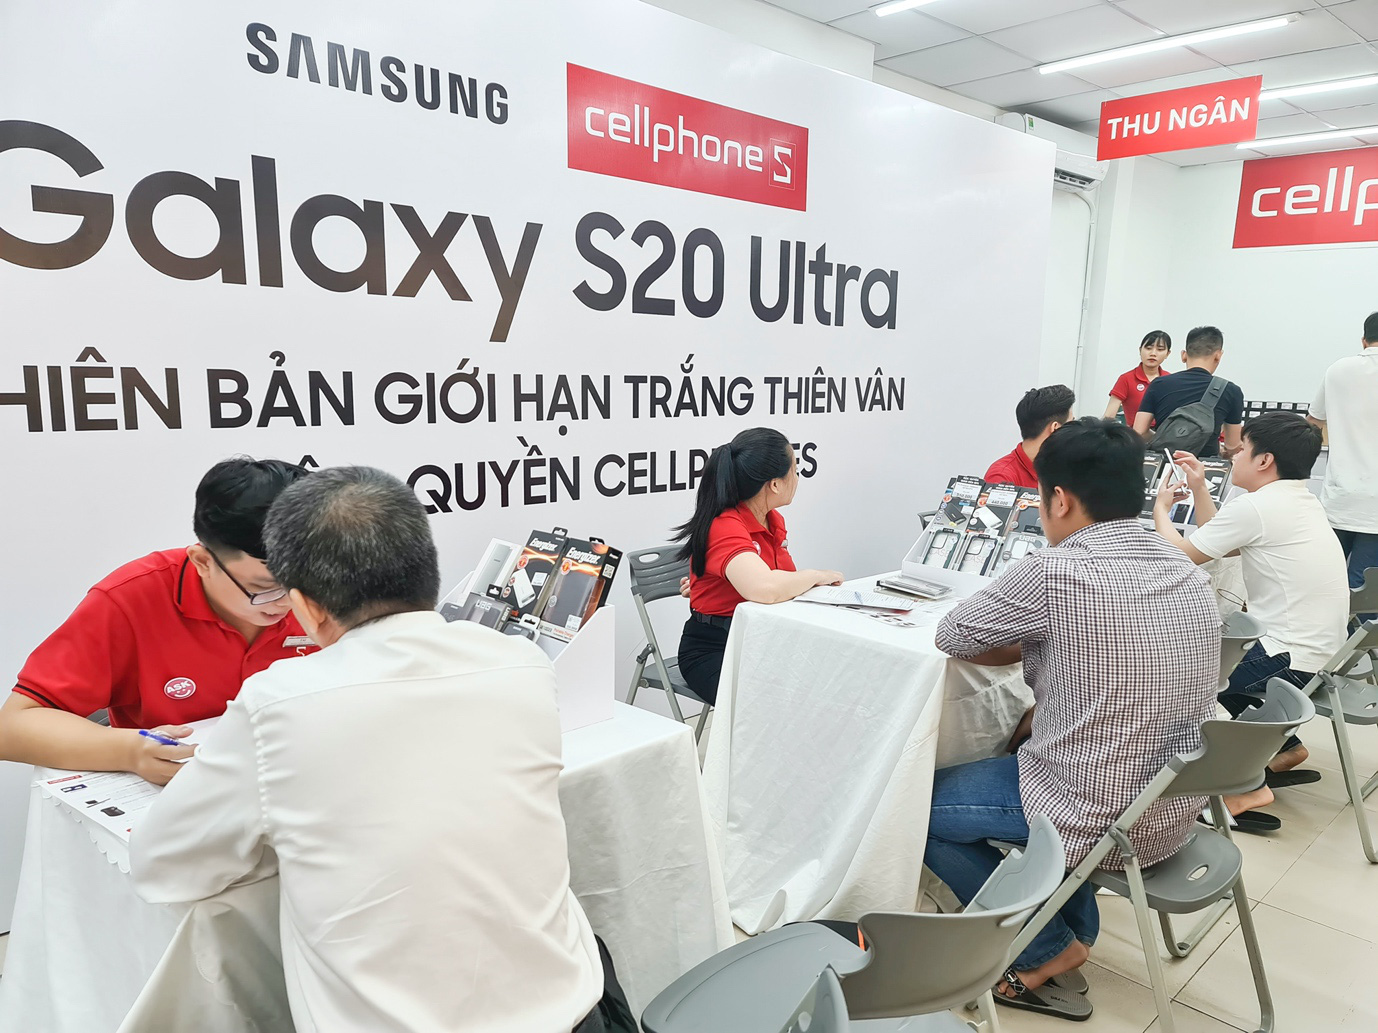 Galaxy S20 Ultra Trắng Thiên Vân mở bán tại Cellphones, “cháy” 1000 suất trong 3 ngày - Ảnh 2.